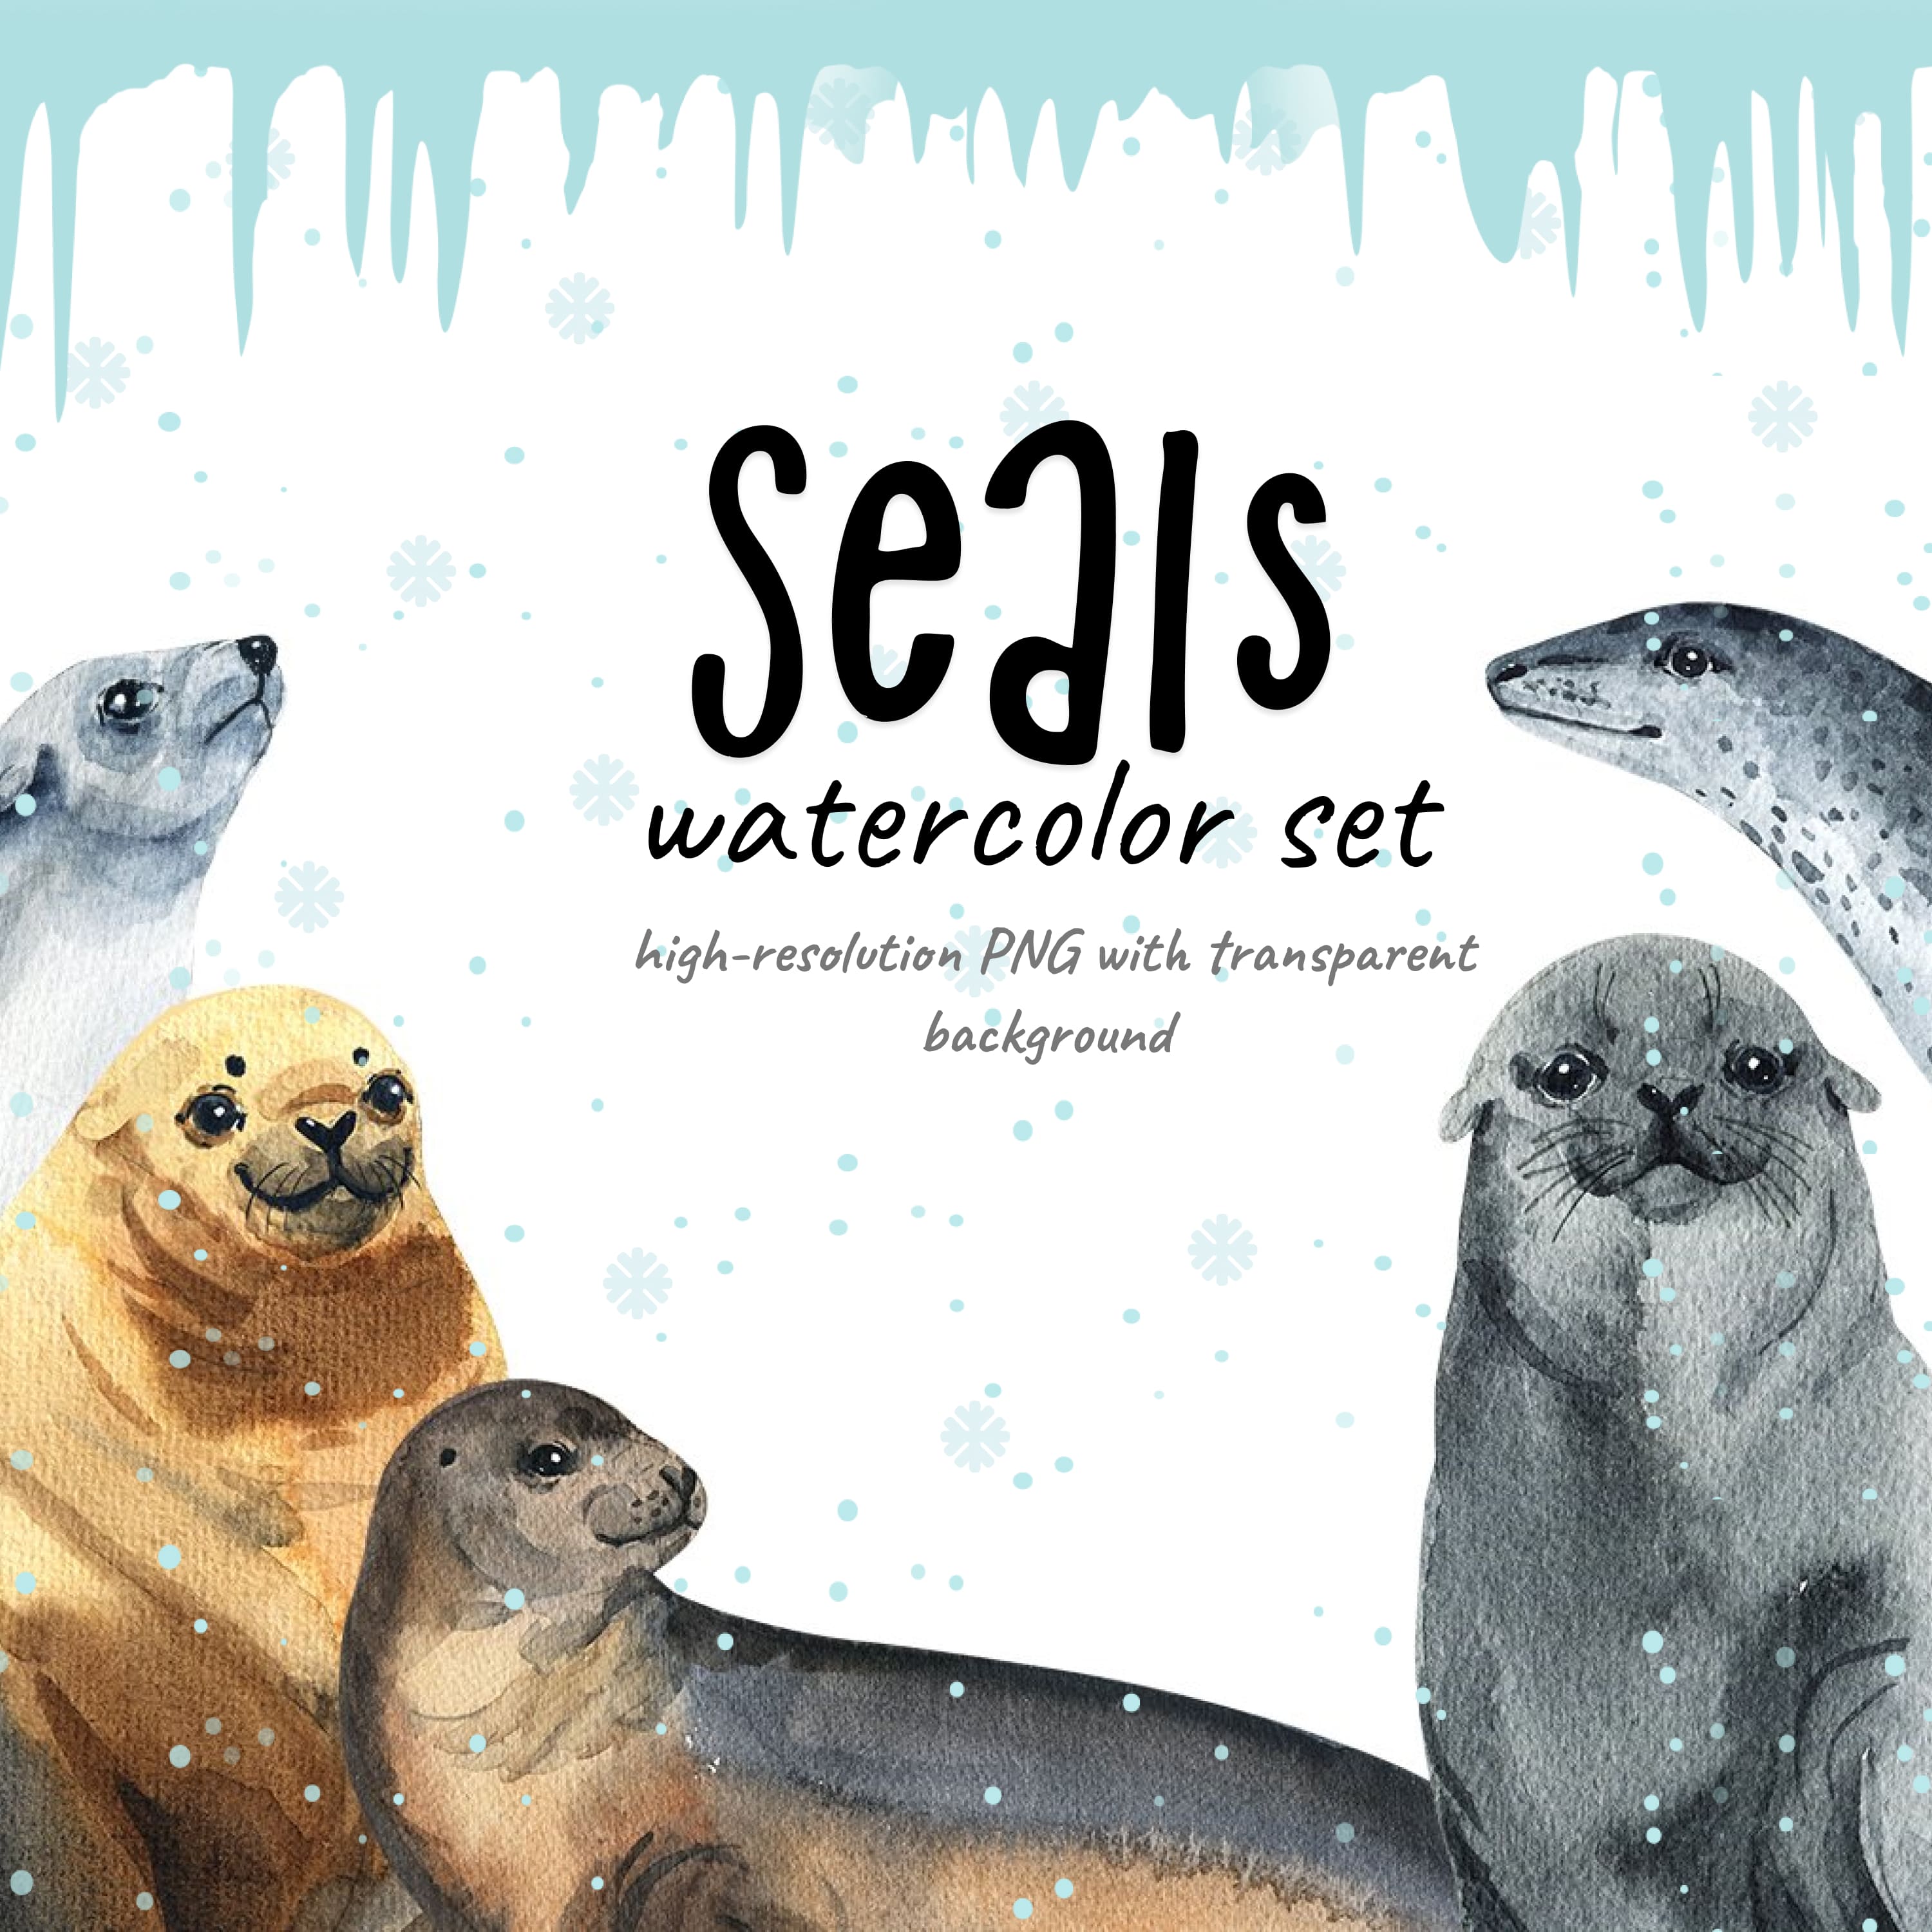 Seals - watercolor set cover.